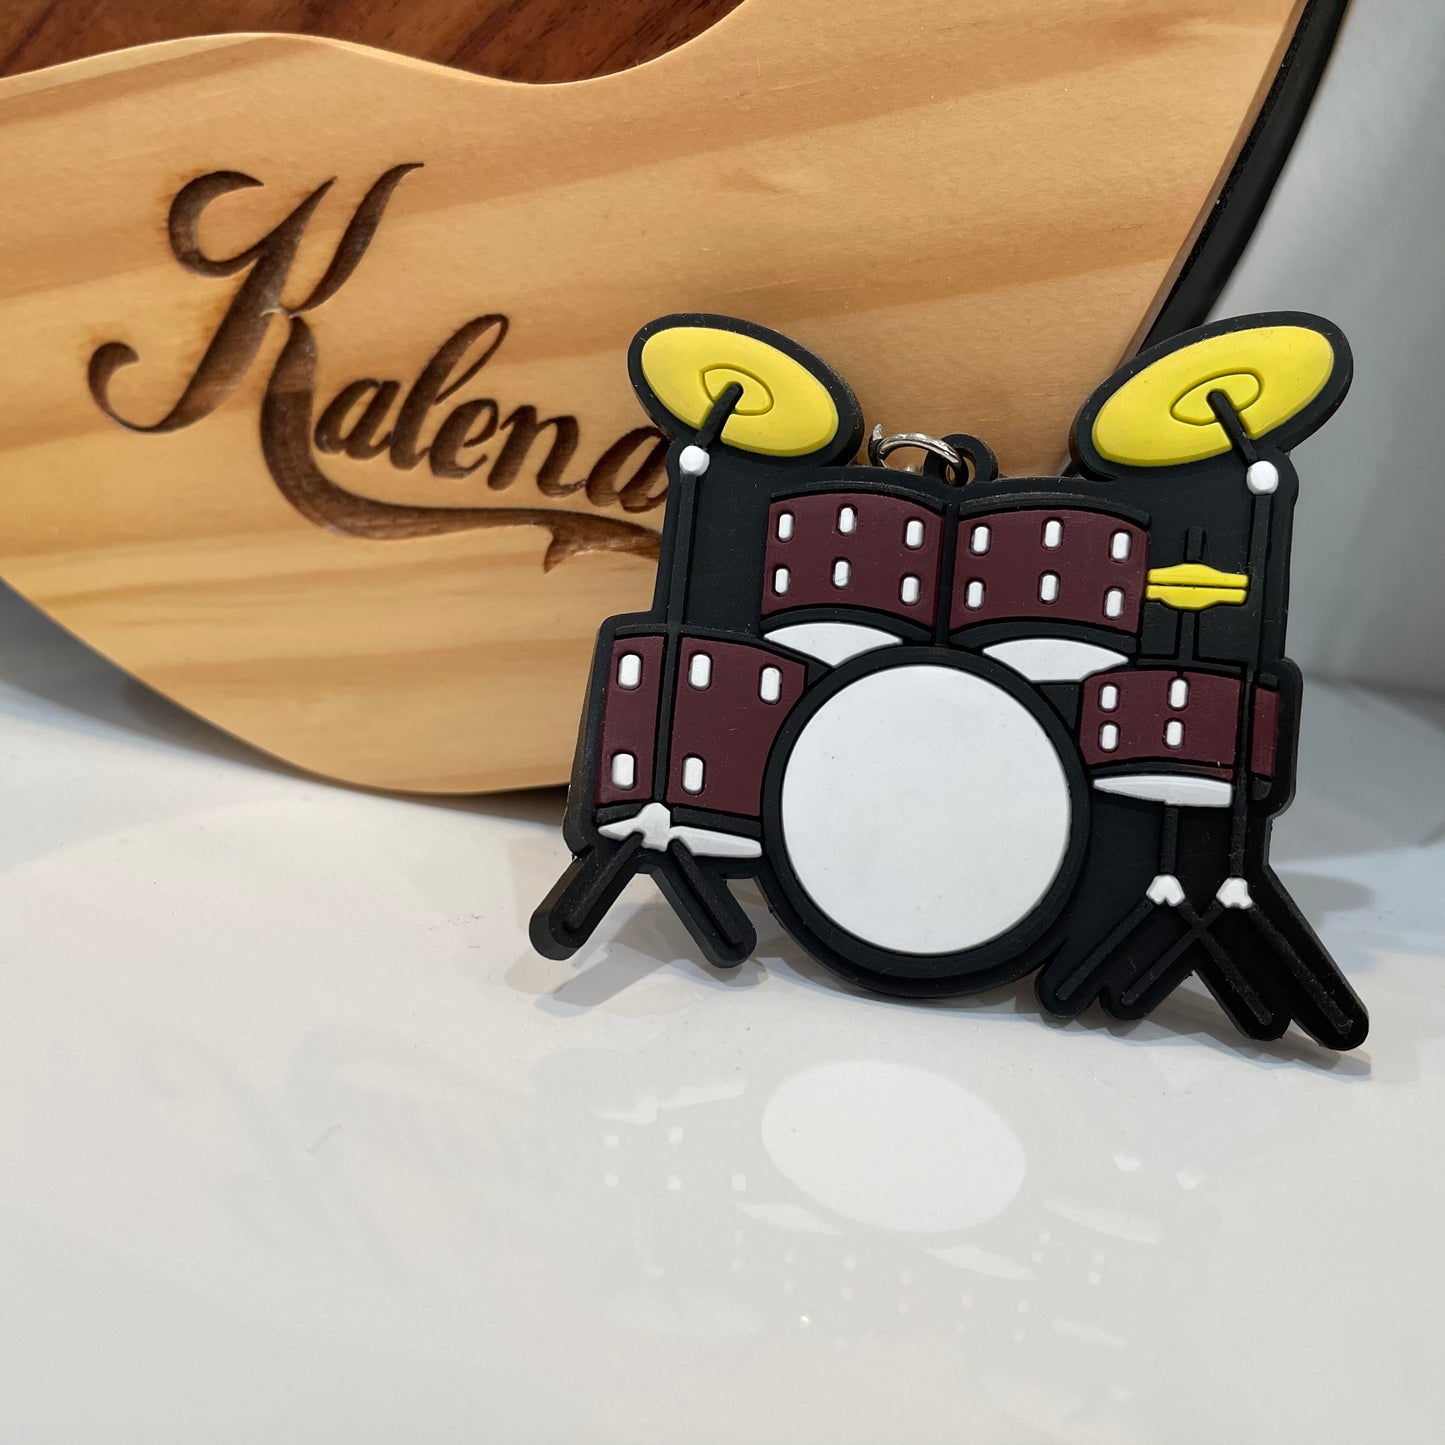 Kalena Rubber Cool Drum keychain